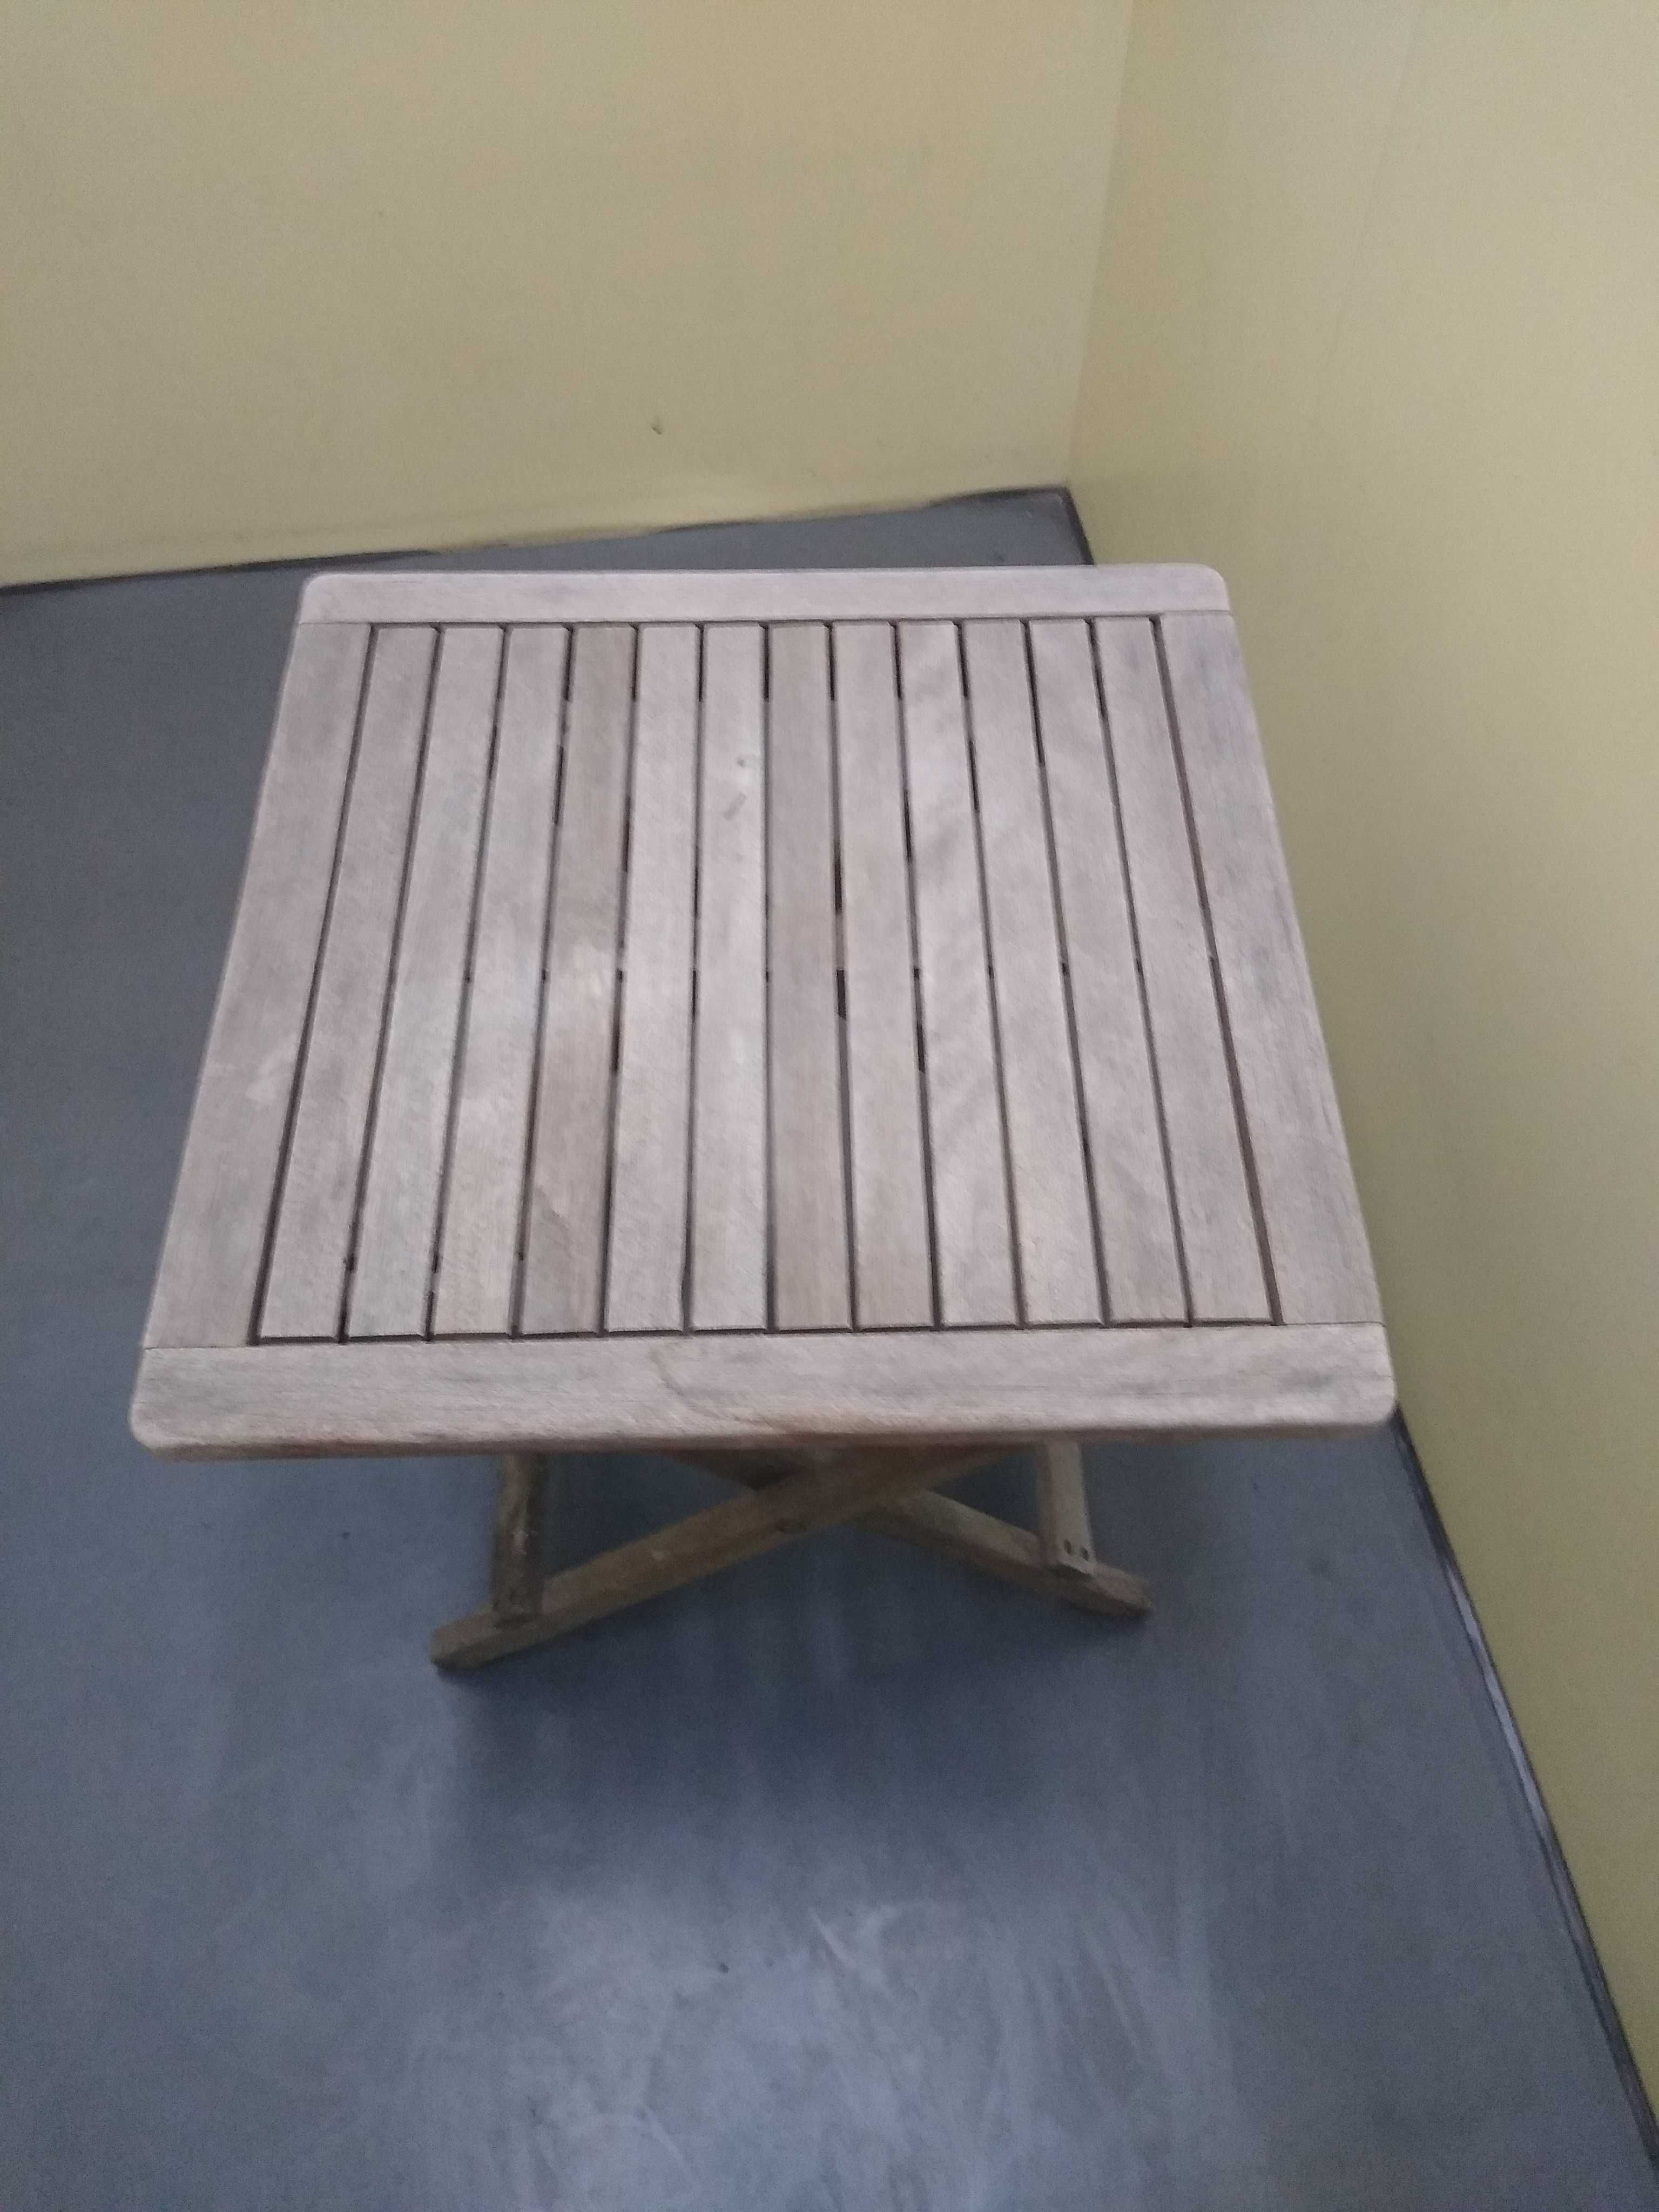 Sprzedam stół stolik / siedzisko drewniane krzesło krzesełko stołek